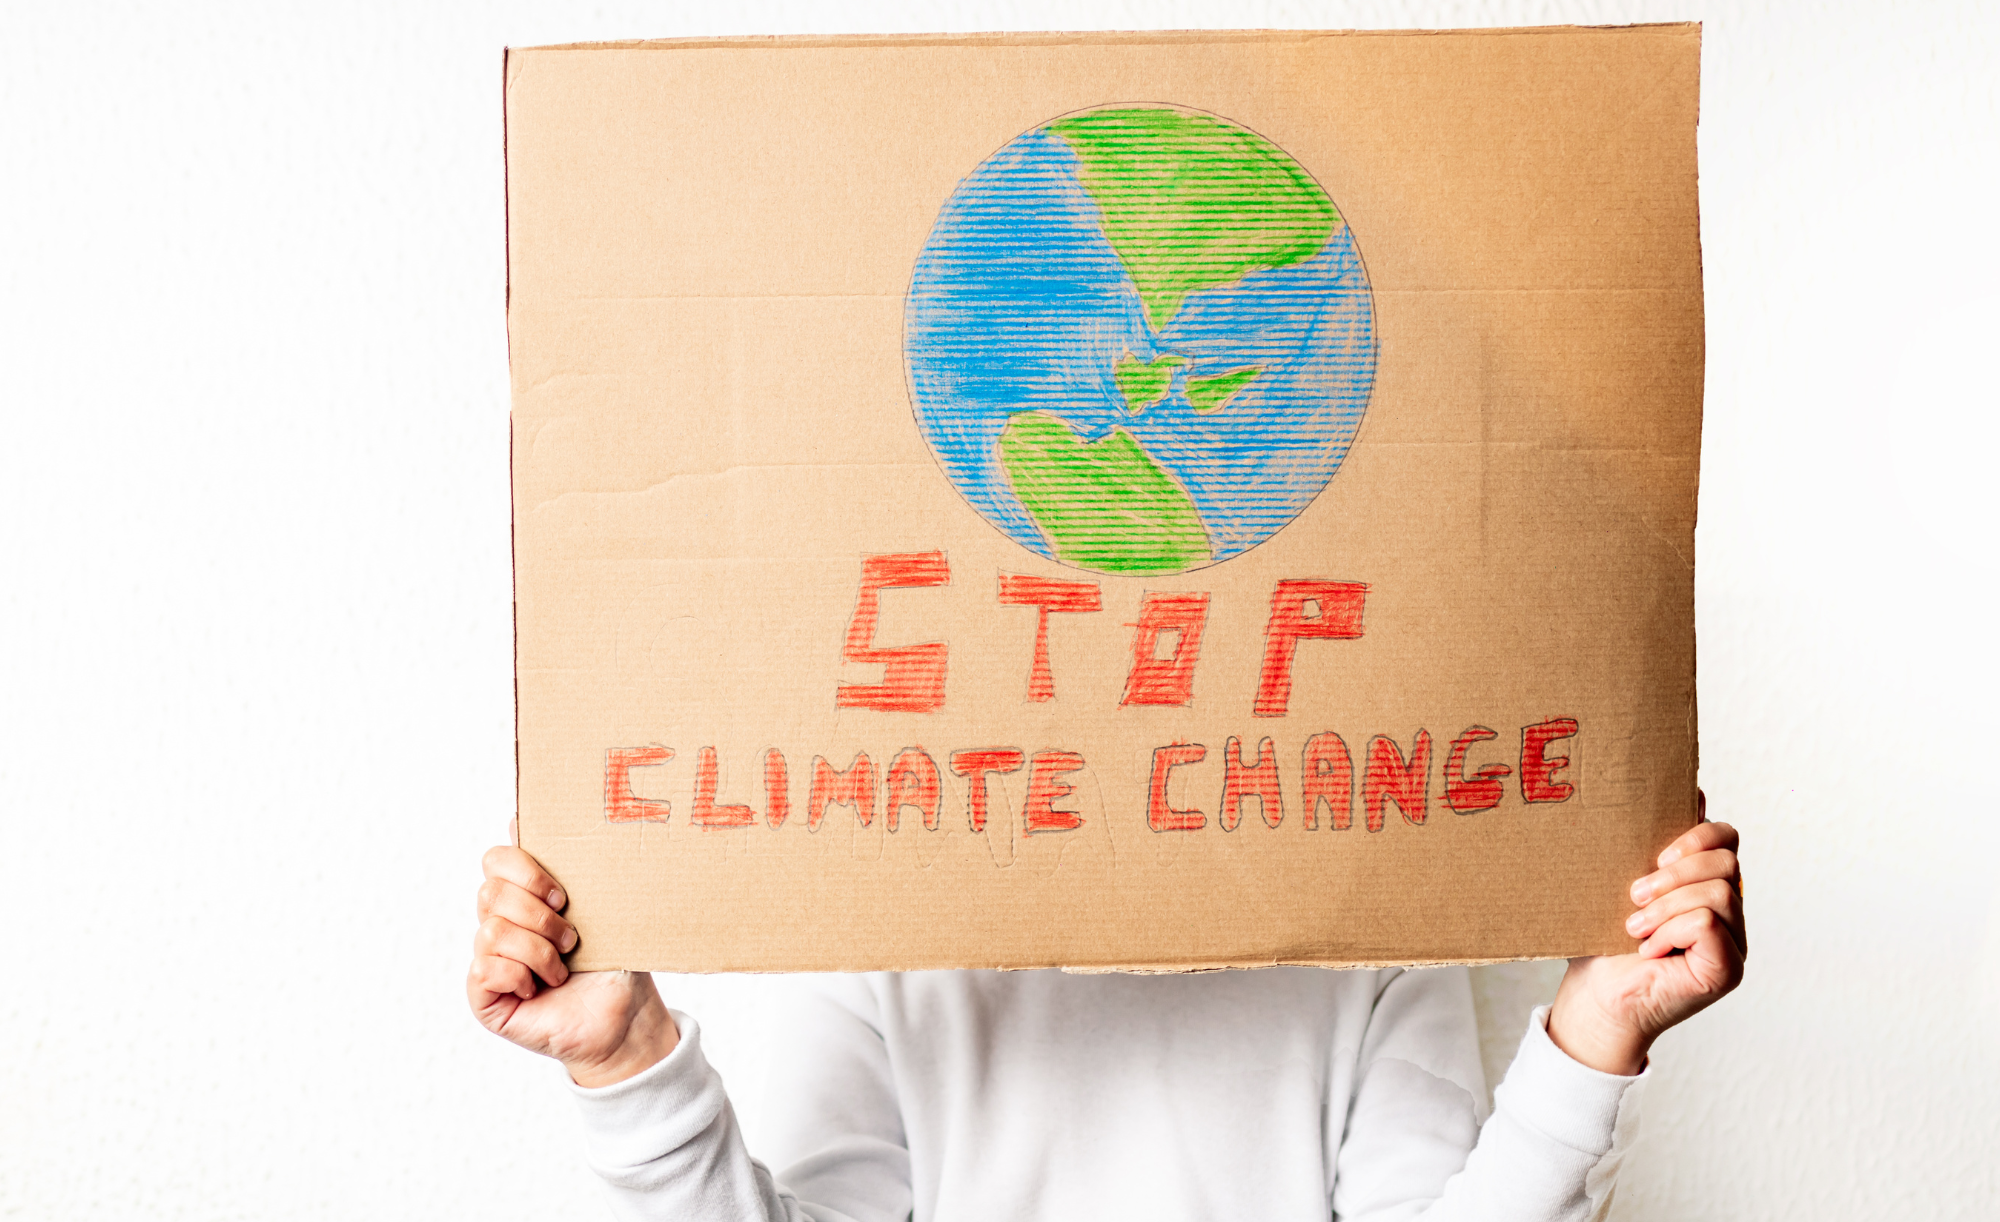 Foto von einem Menschen mit Pappe-Plakat vor dem Gesicht, das Bild einer Erde und den Schriftzug "Stop Climate Change" zeigt.